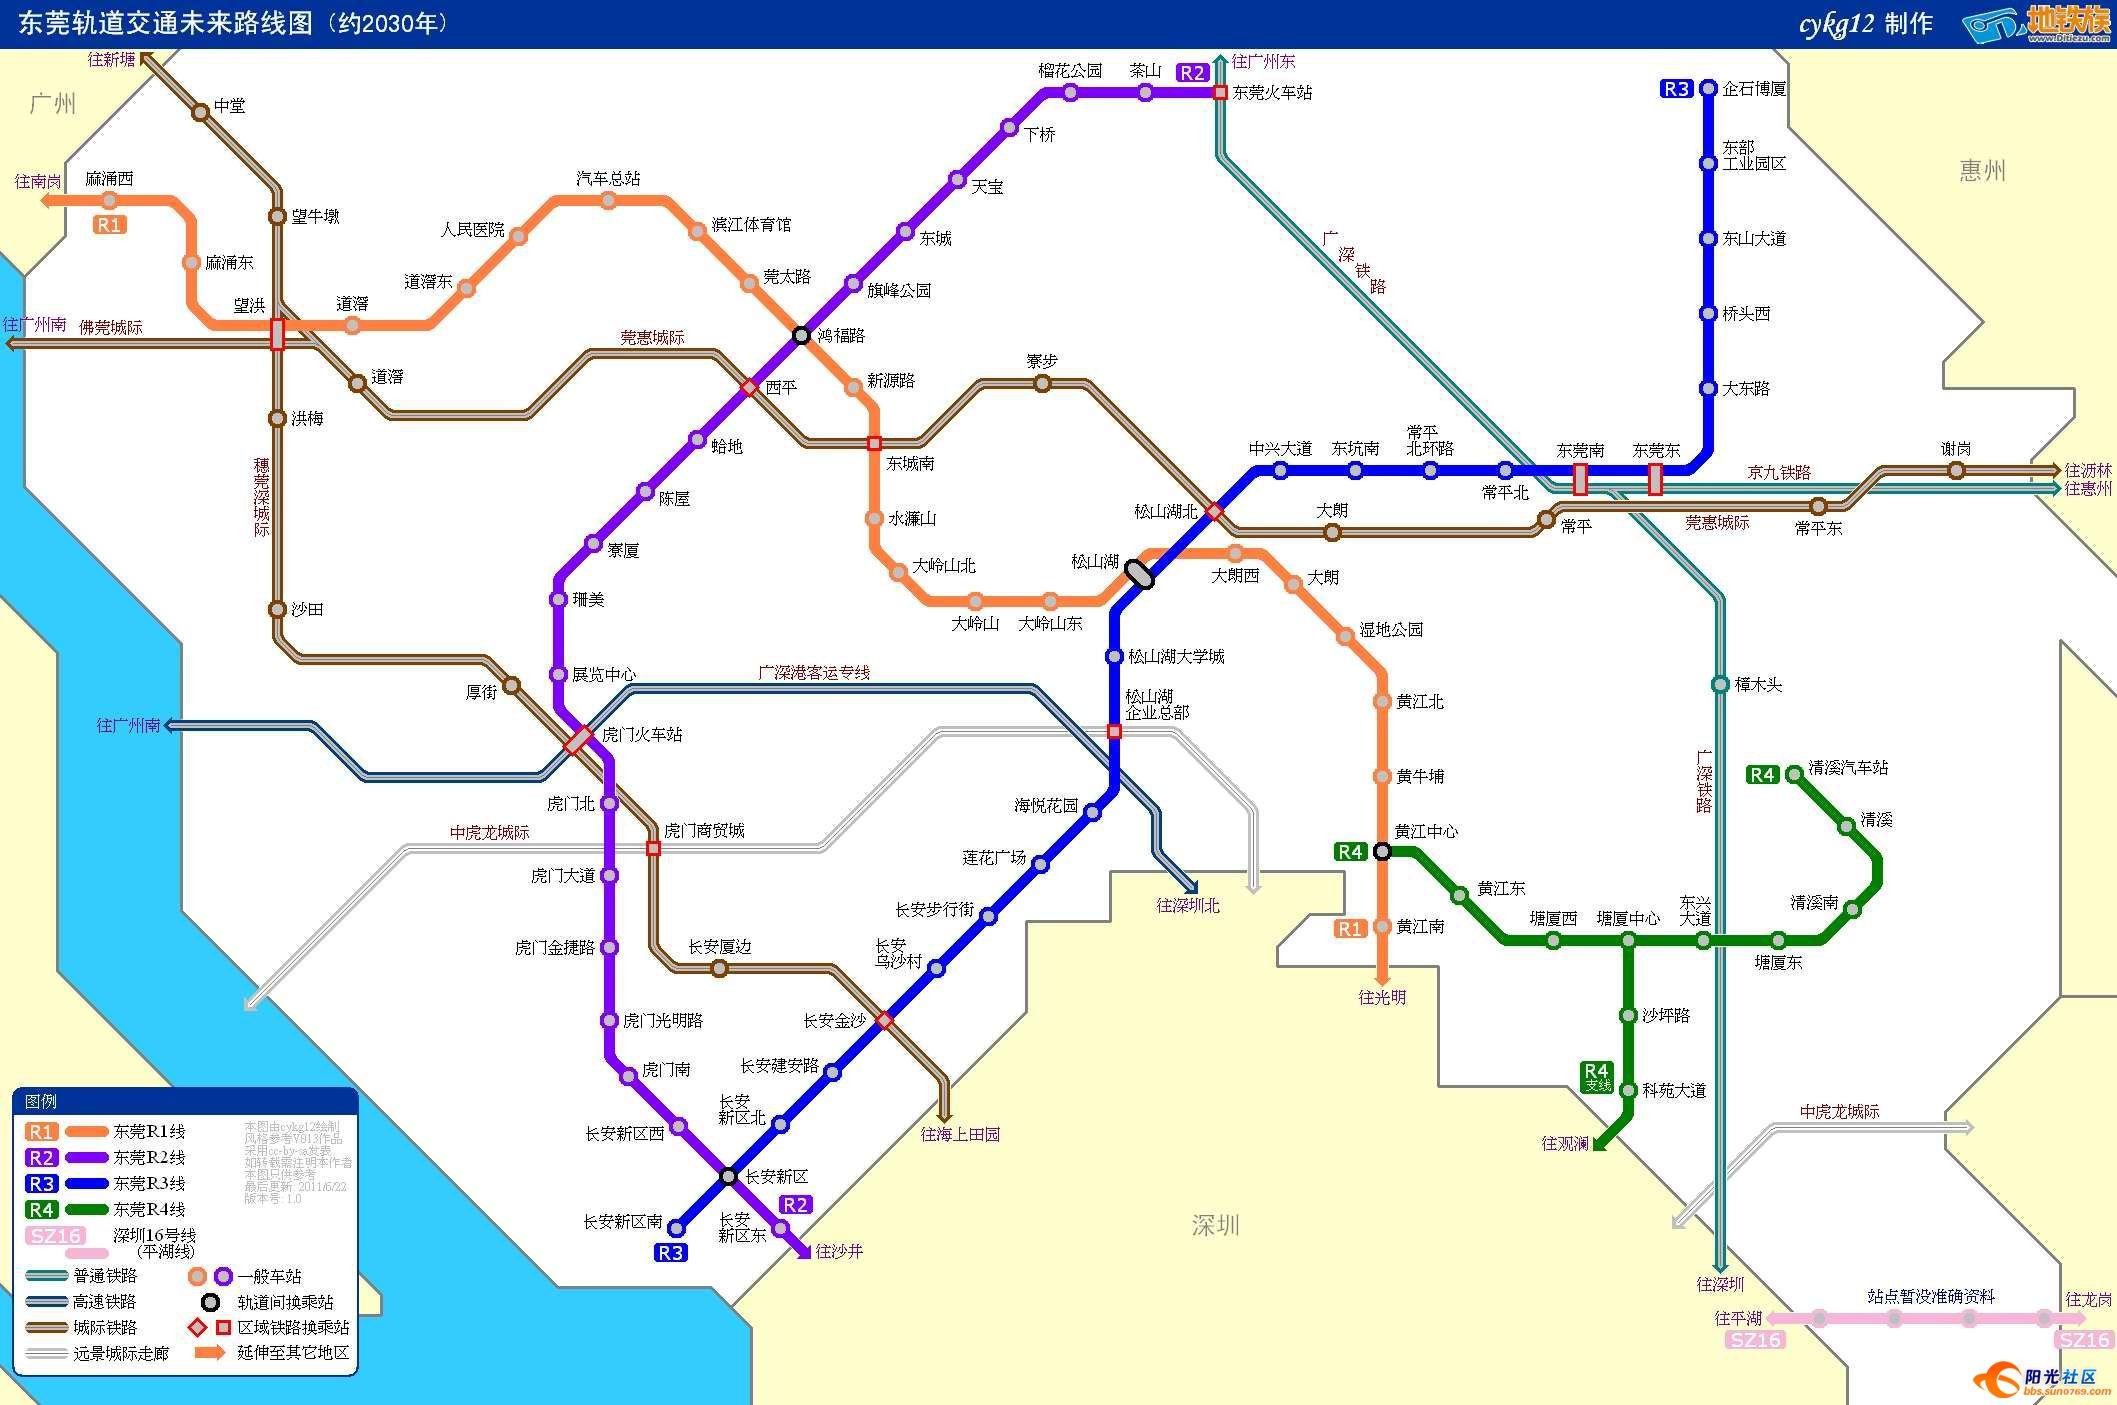 东莞轨道交通未来线路图(2030年)